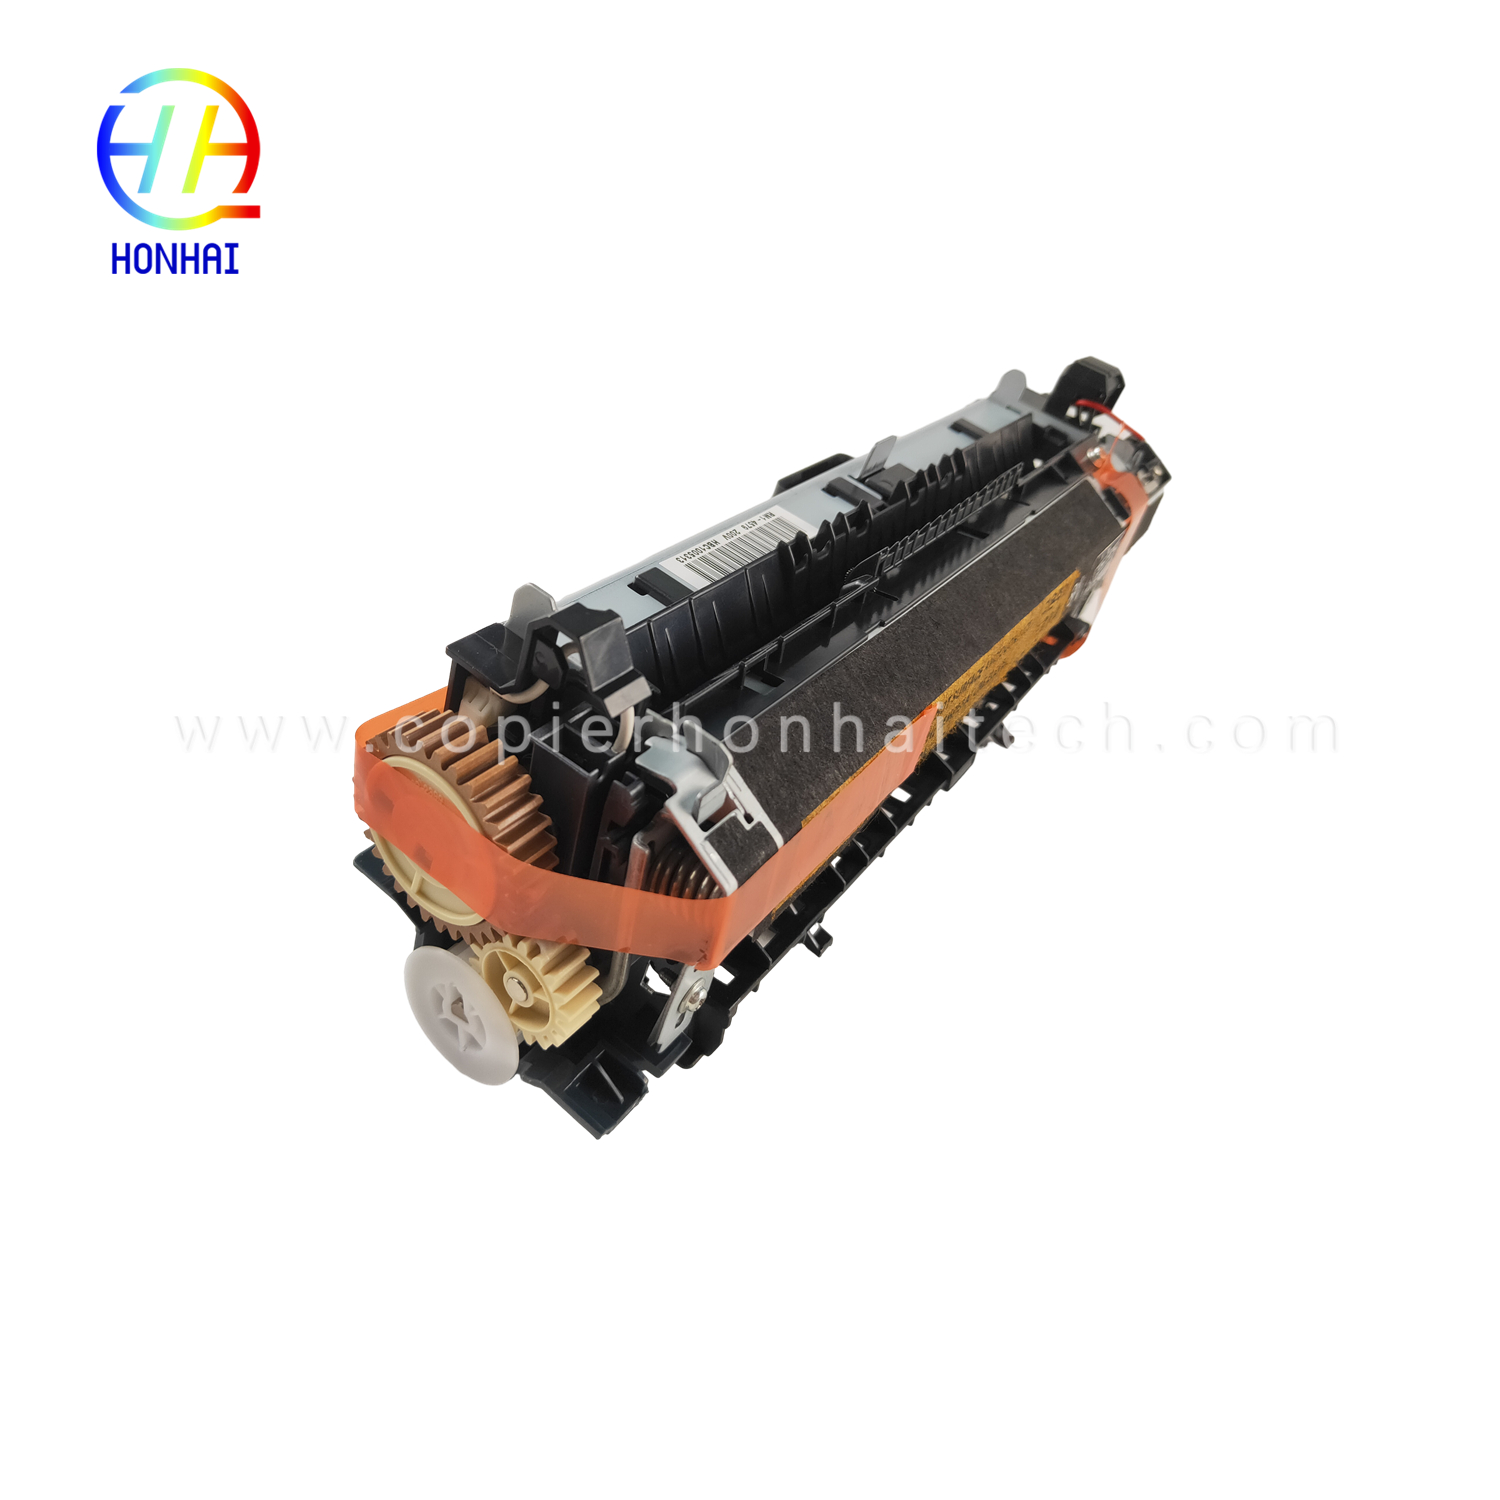 https://www.copierhonhaitech.com/fuser-assemble-for-hp-rm1-4554-000-rm1-4579-000-fuser-unit-product/